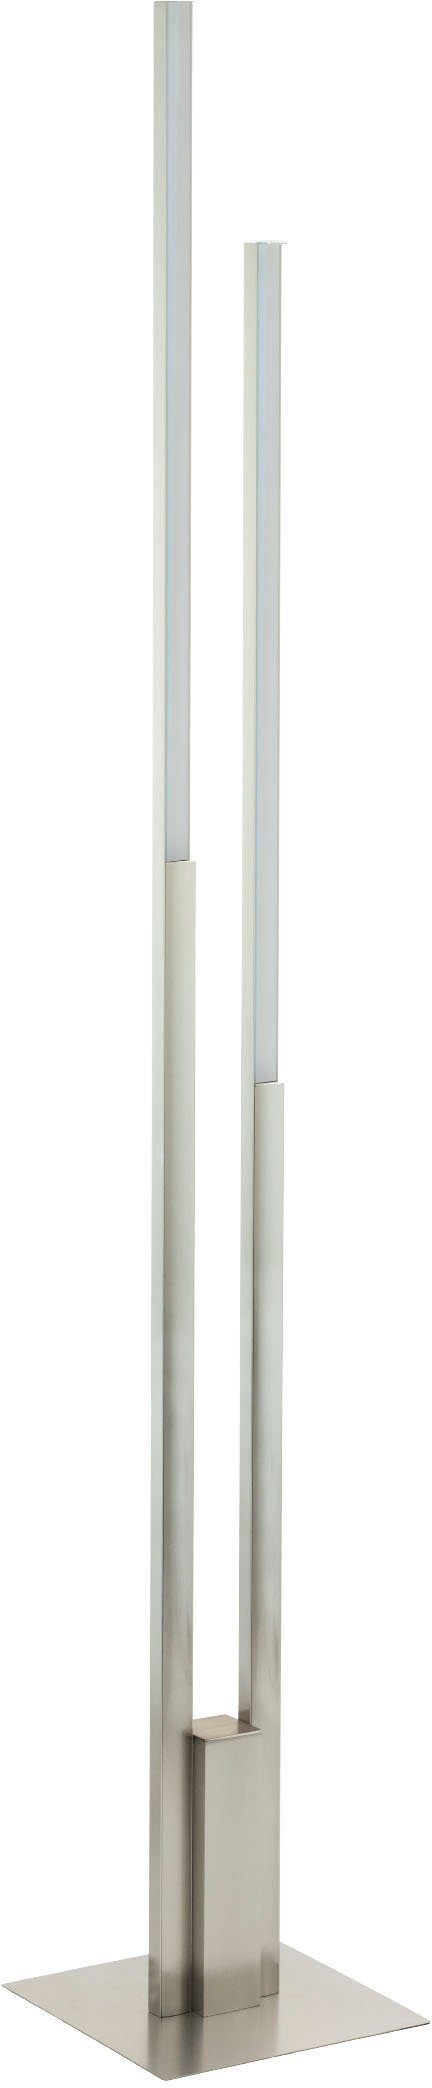 Hervorragende Qualität EGLO Stehlampe FRAIOLI-Z, LED fest in kaltweiß, warmweiß - Alu Stehleuchte - - warmweiß kaltweiß - nickel integriert, 2X17W aus